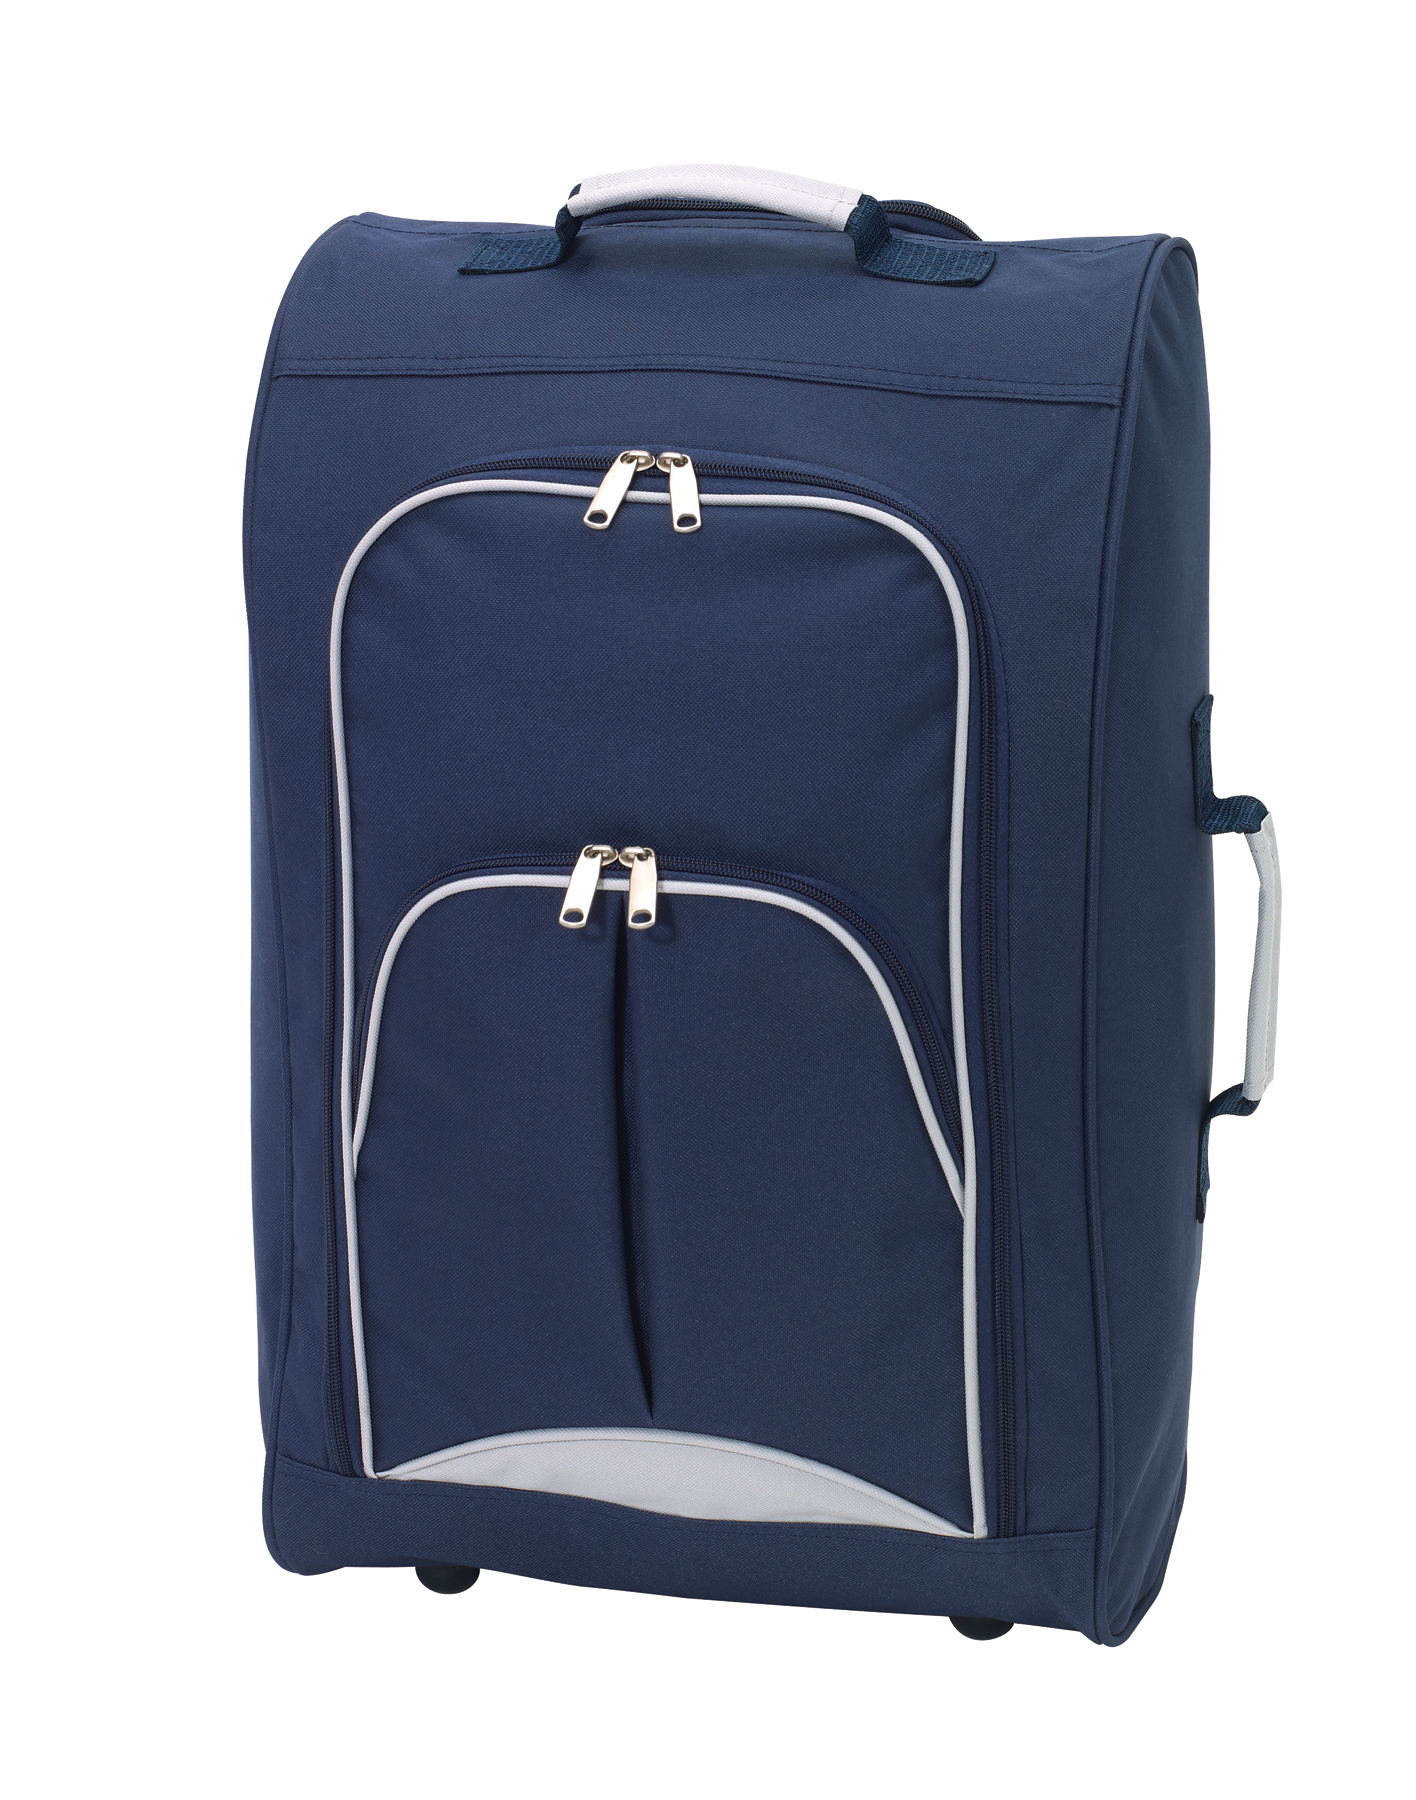 Palubní kufr na kolečkách VIENNA - modrá